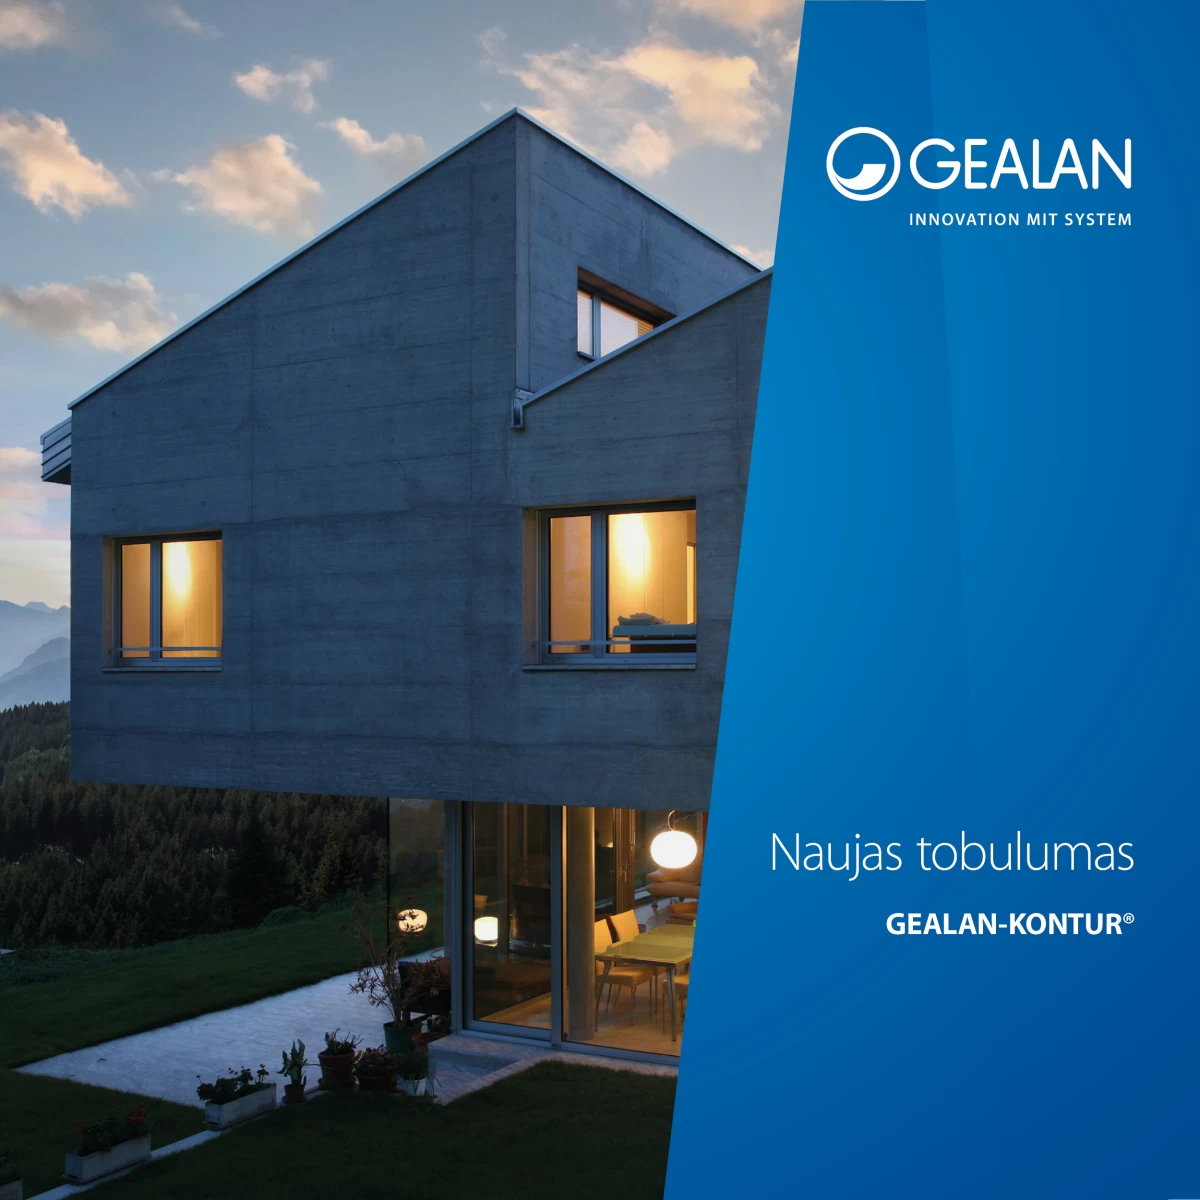 GEALAN-KONTUR® – nauja aukščiausios klasės langų sistema orientuota kaustyti aliuminiu